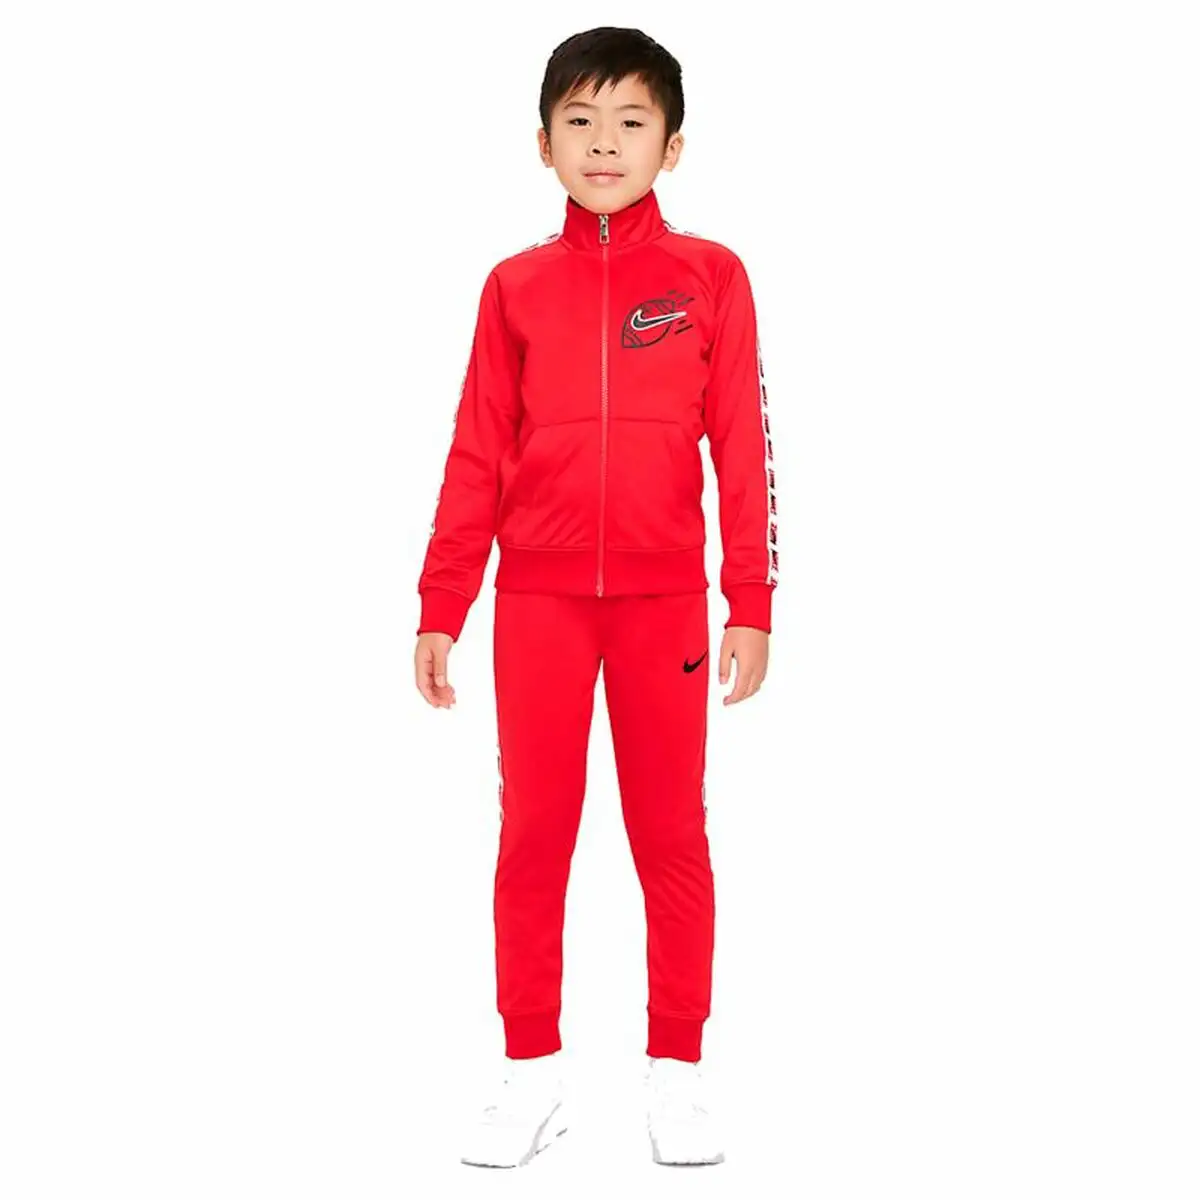 Ensemble de sport pour enfants nike my first tricot rouge_8129. DIAYTAR SENEGAL - L'Art de Vivre le Shopping Inspiré. Parcourez notre catalogue et choisissez des produits qui reflètent votre passion pour la beauté et l'authenticité.